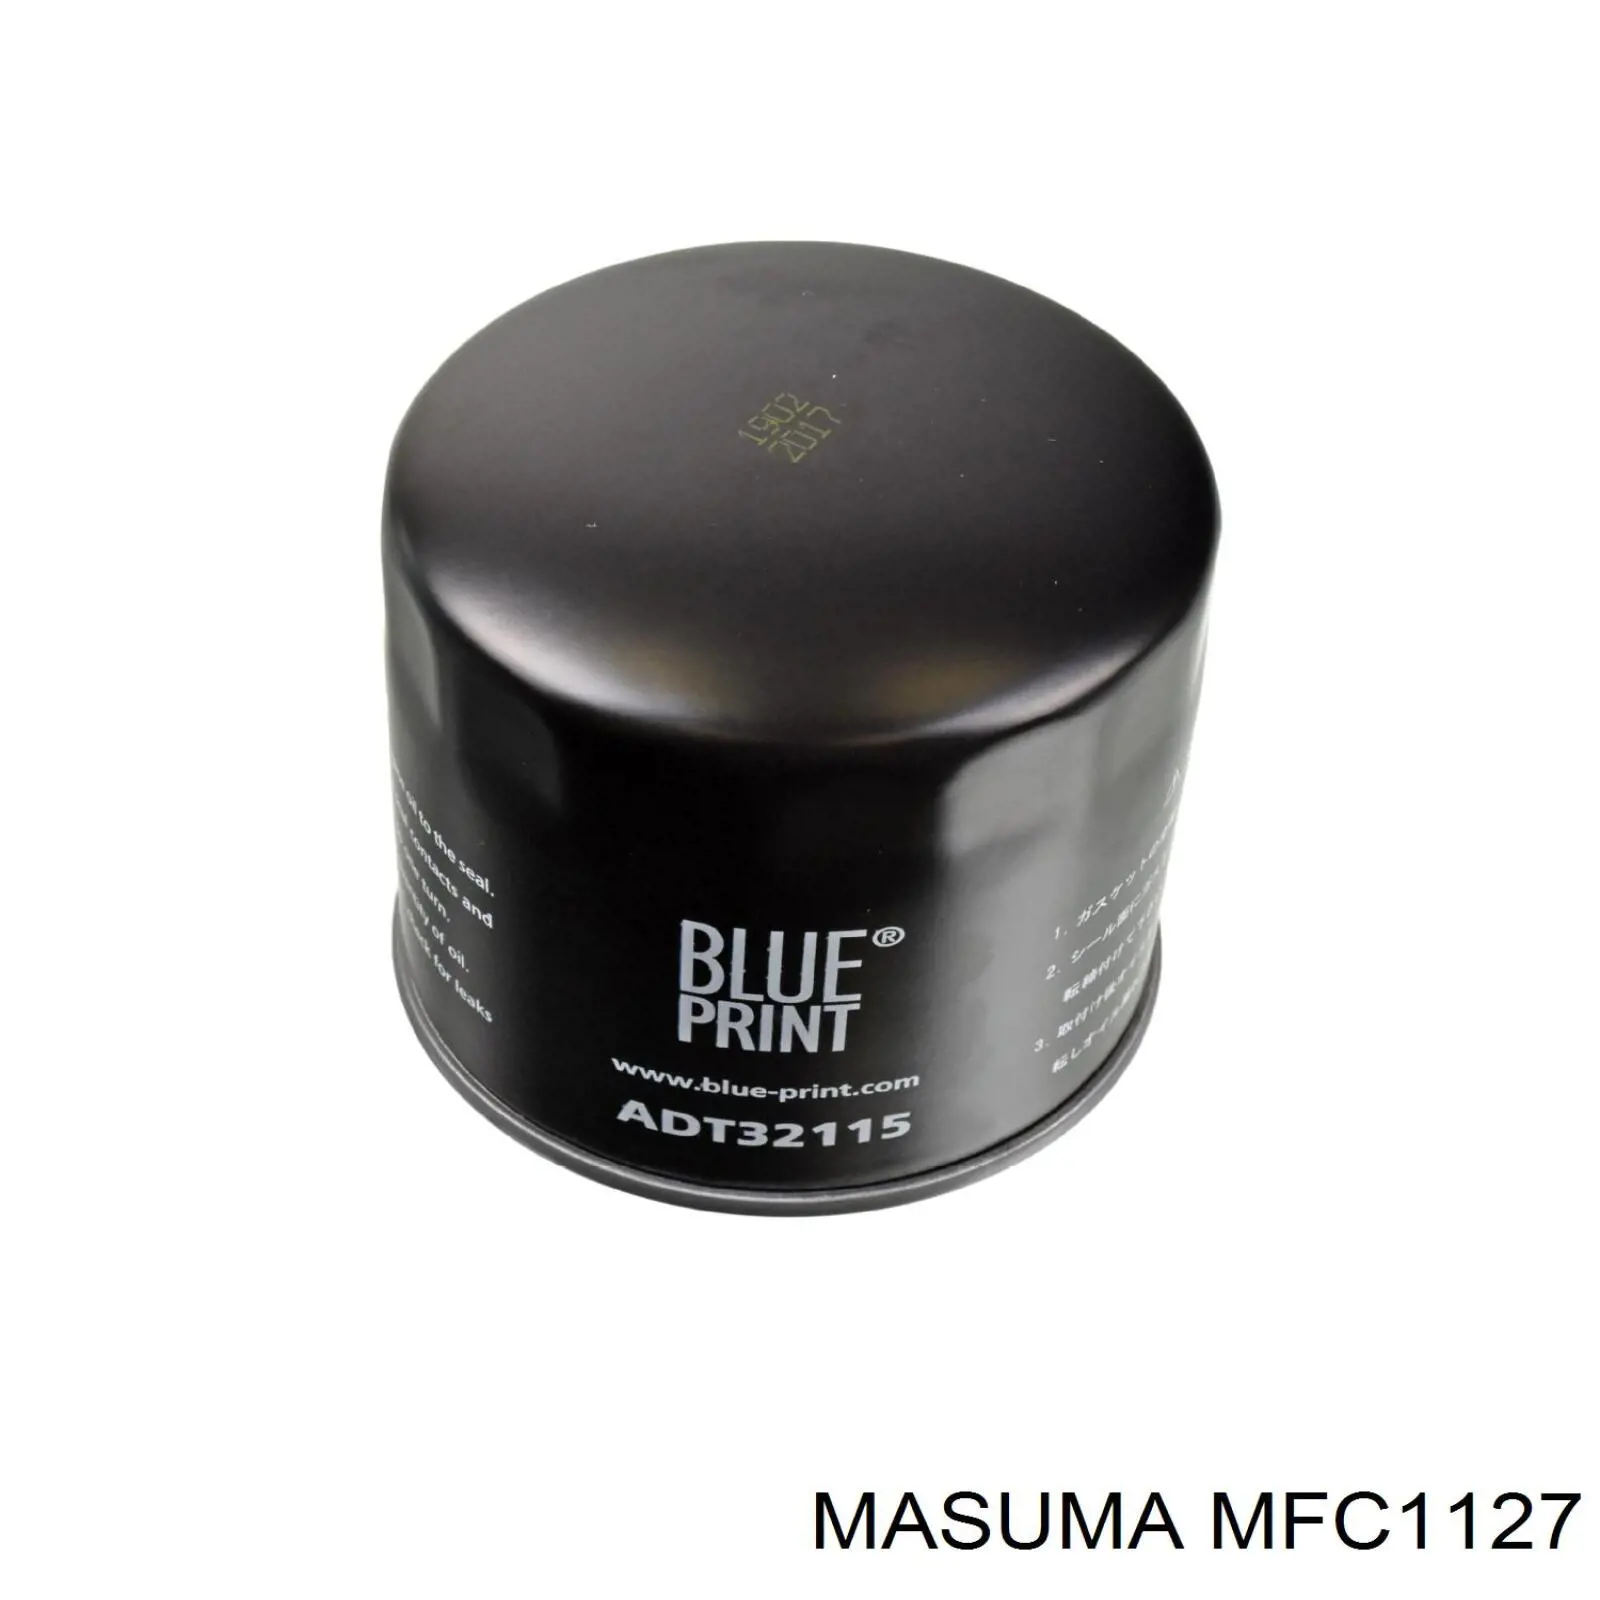 MFC1127 Masuma масляный фильтр